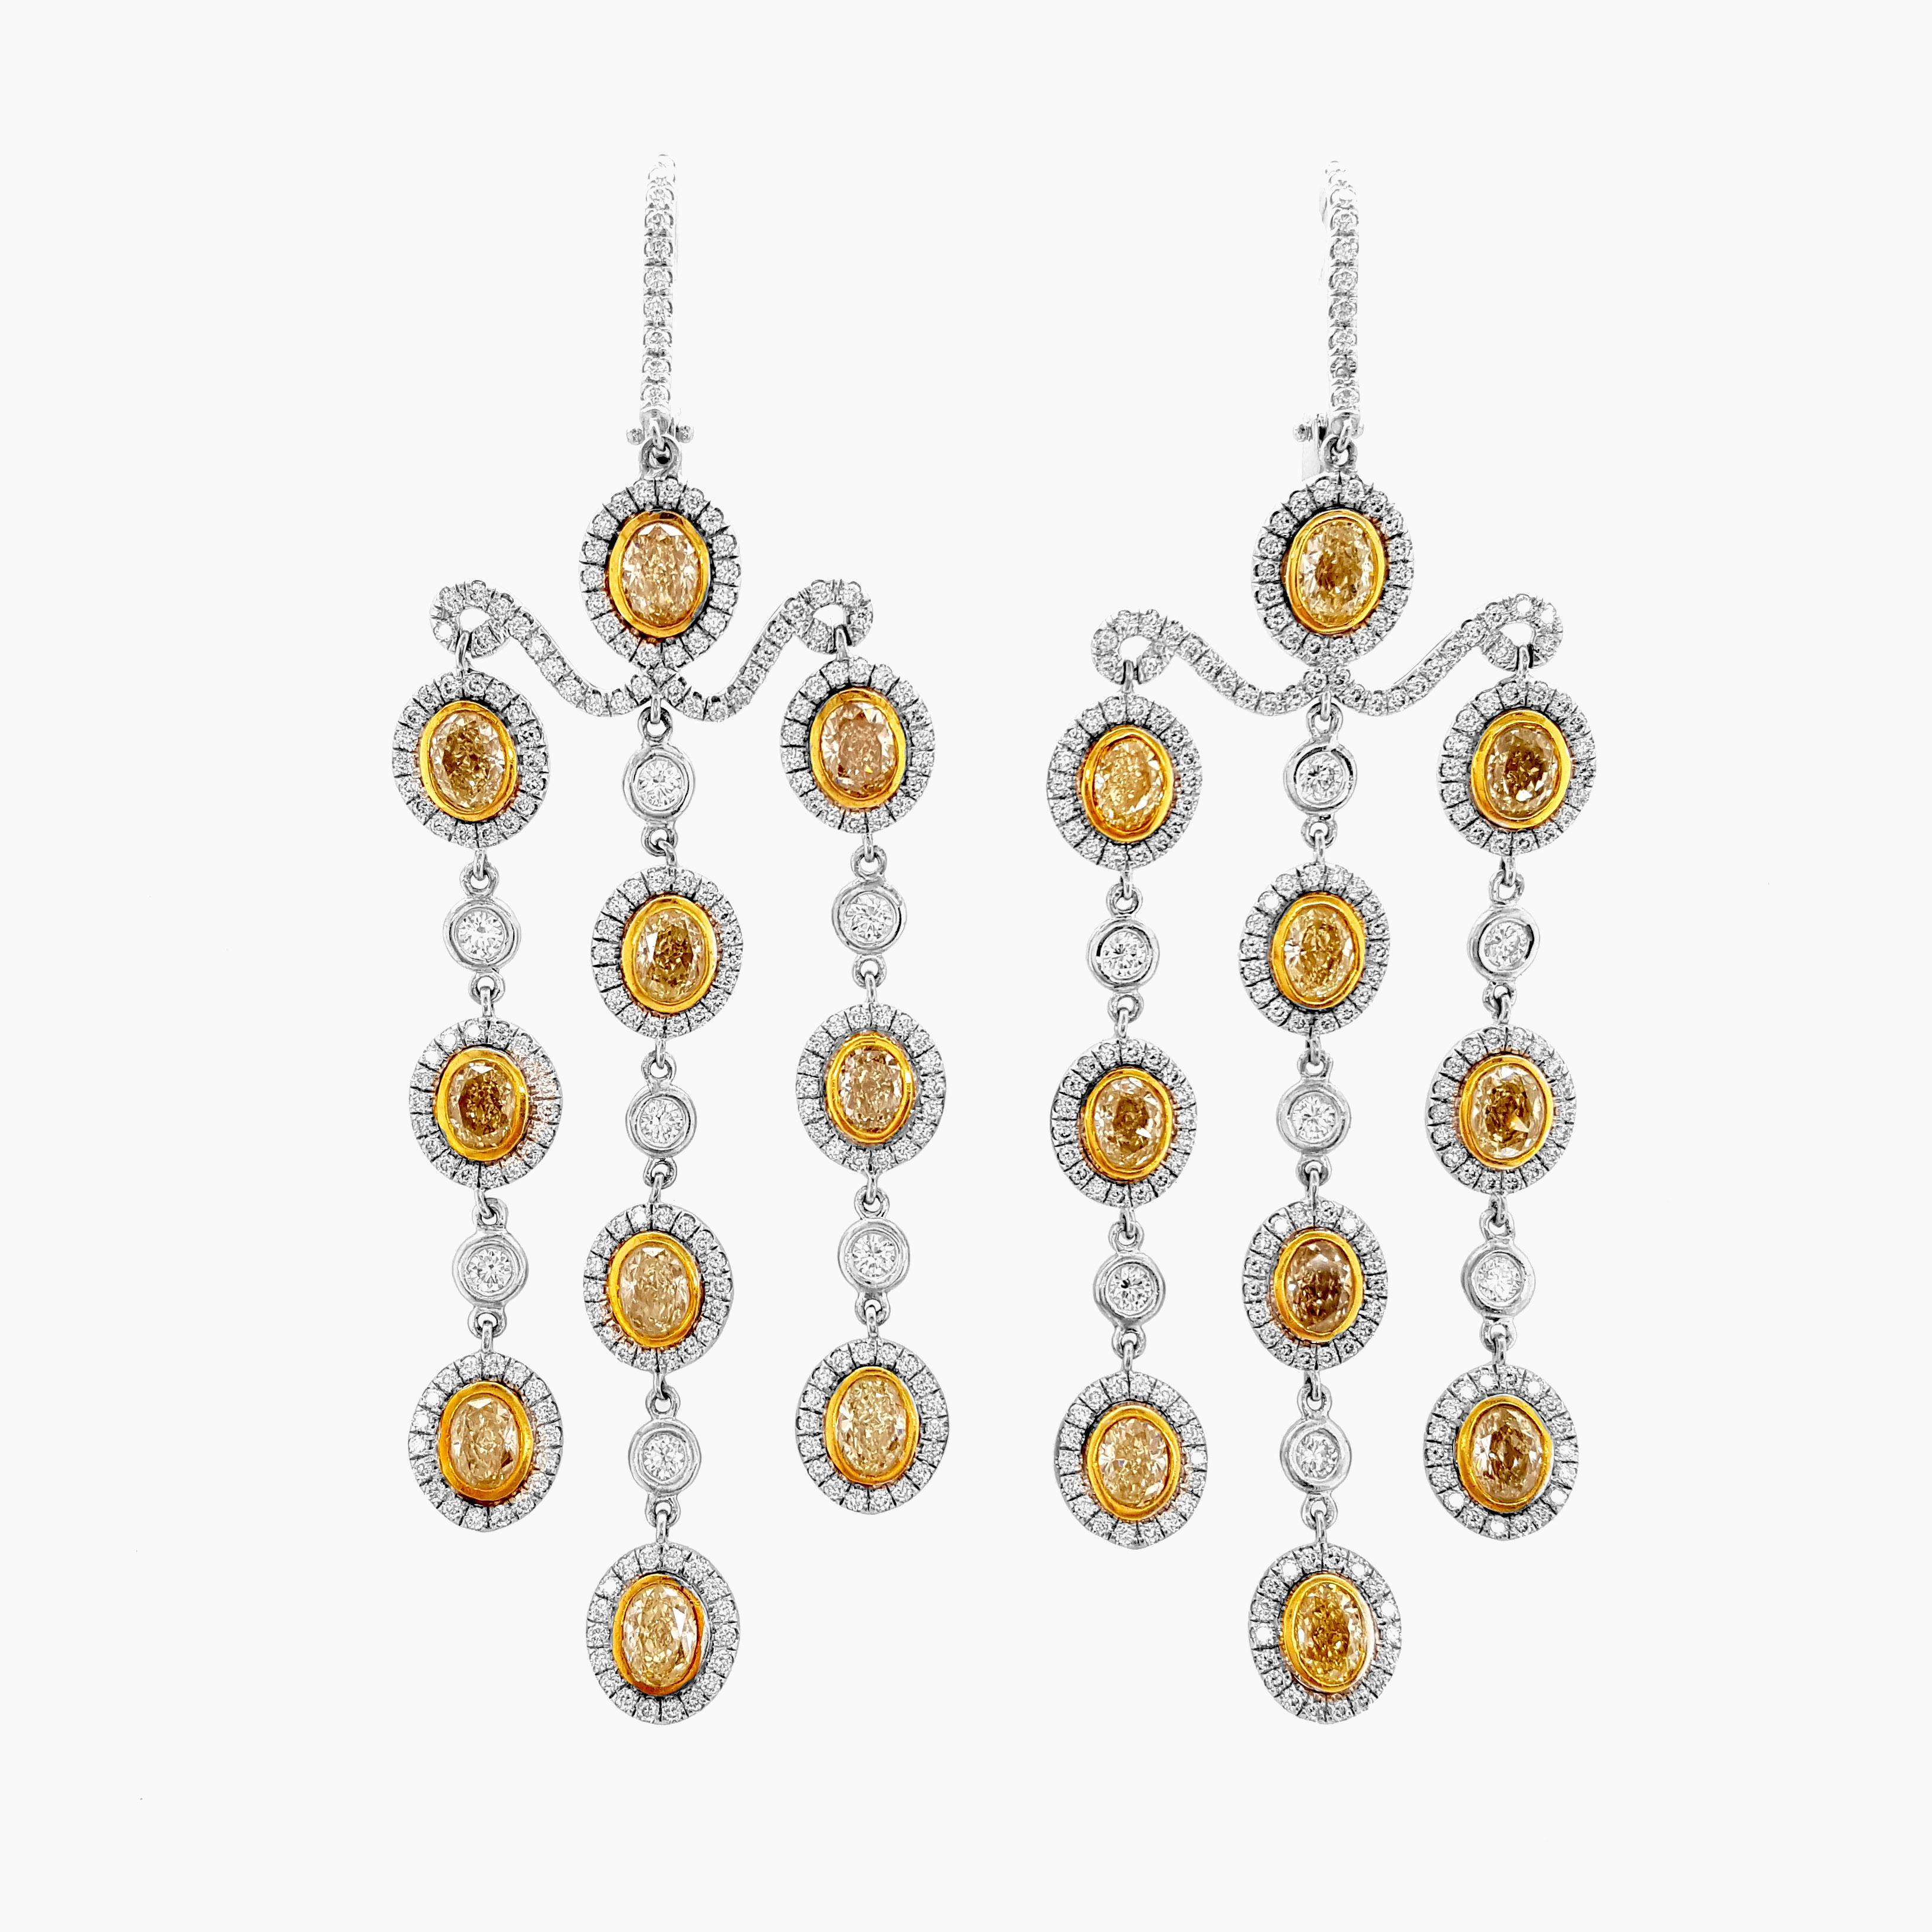 Wir präsentieren unser exquisites Paar Kronleuchter-Ohrringe, die mit einer faszinierenden Kombination aus 7,23 Karat hellgelben und weißen Diamanten geschmückt sind. Diese handgefertigten Ohrringe aus poliertem 18-karätigem Gelb- und Weißgold